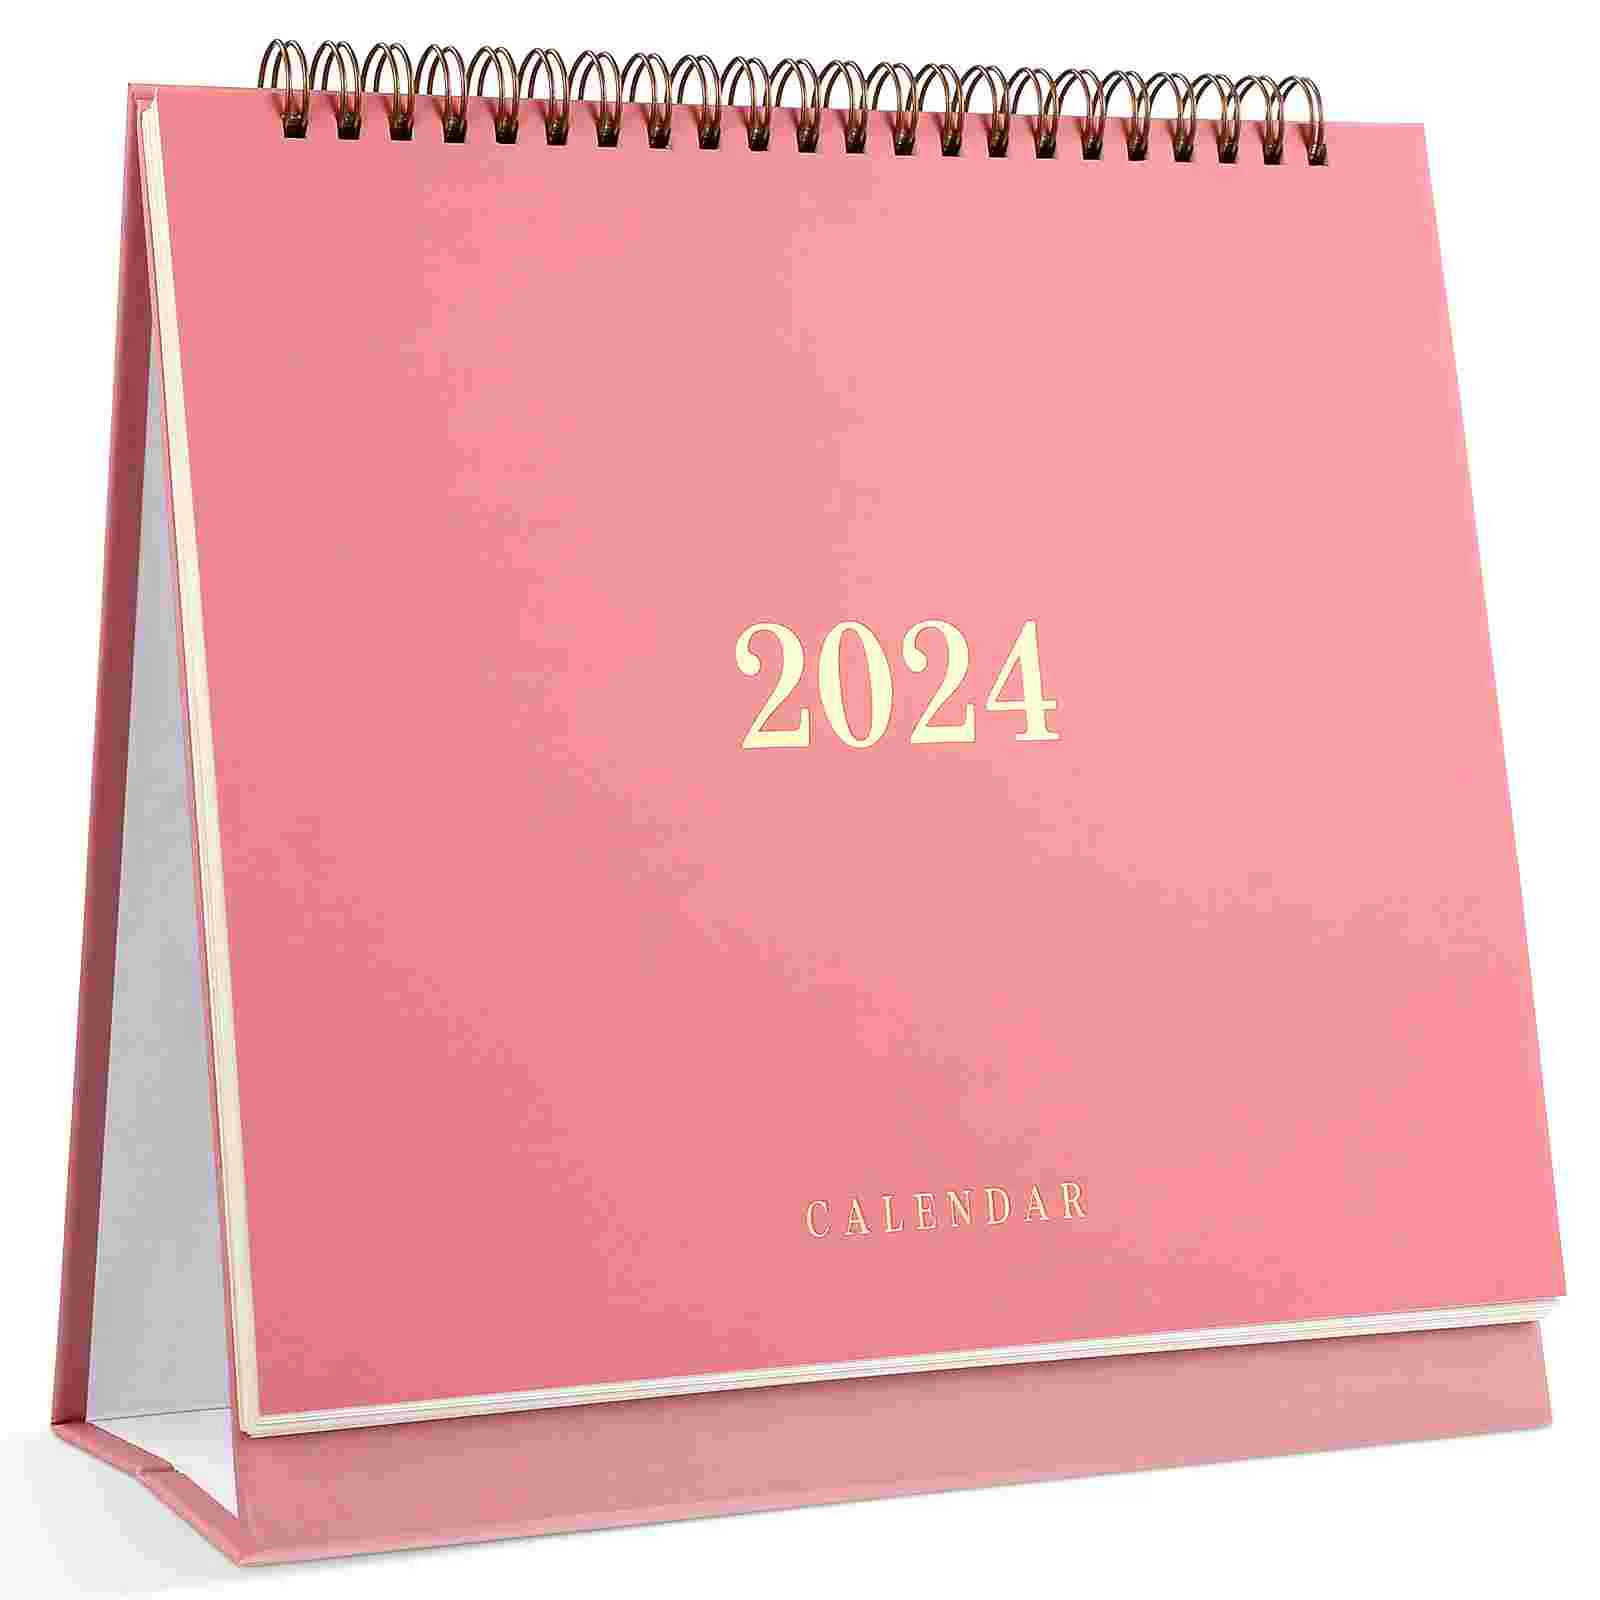 

Календарь 2024 (розовый), планировщик офиса, настольный, бытовые календари, бумага для месяца, маленький